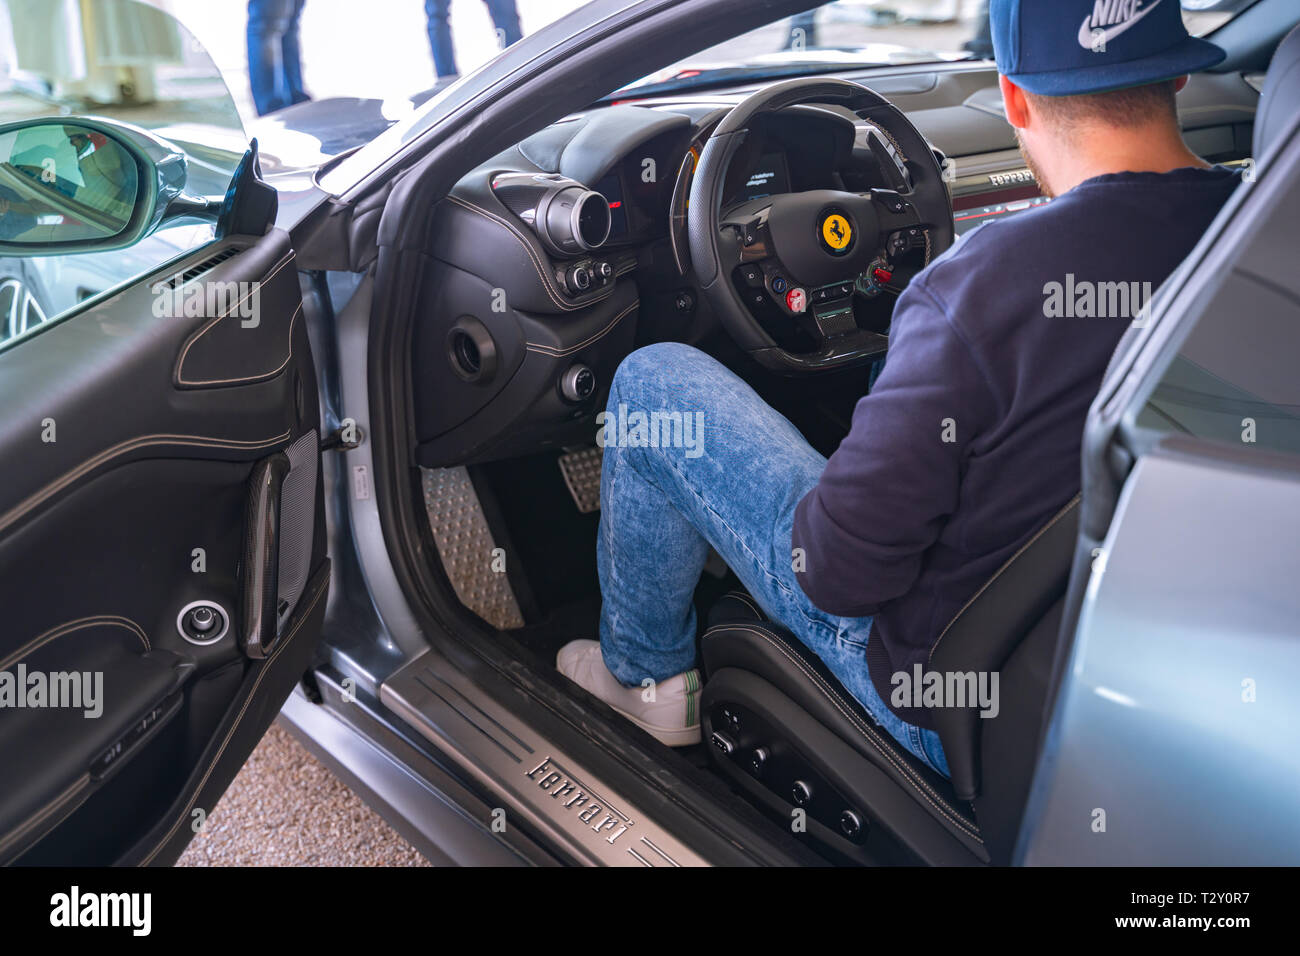 Valencia,Spain - March 30, 2019: Sitting in a Ferrari. Man in a